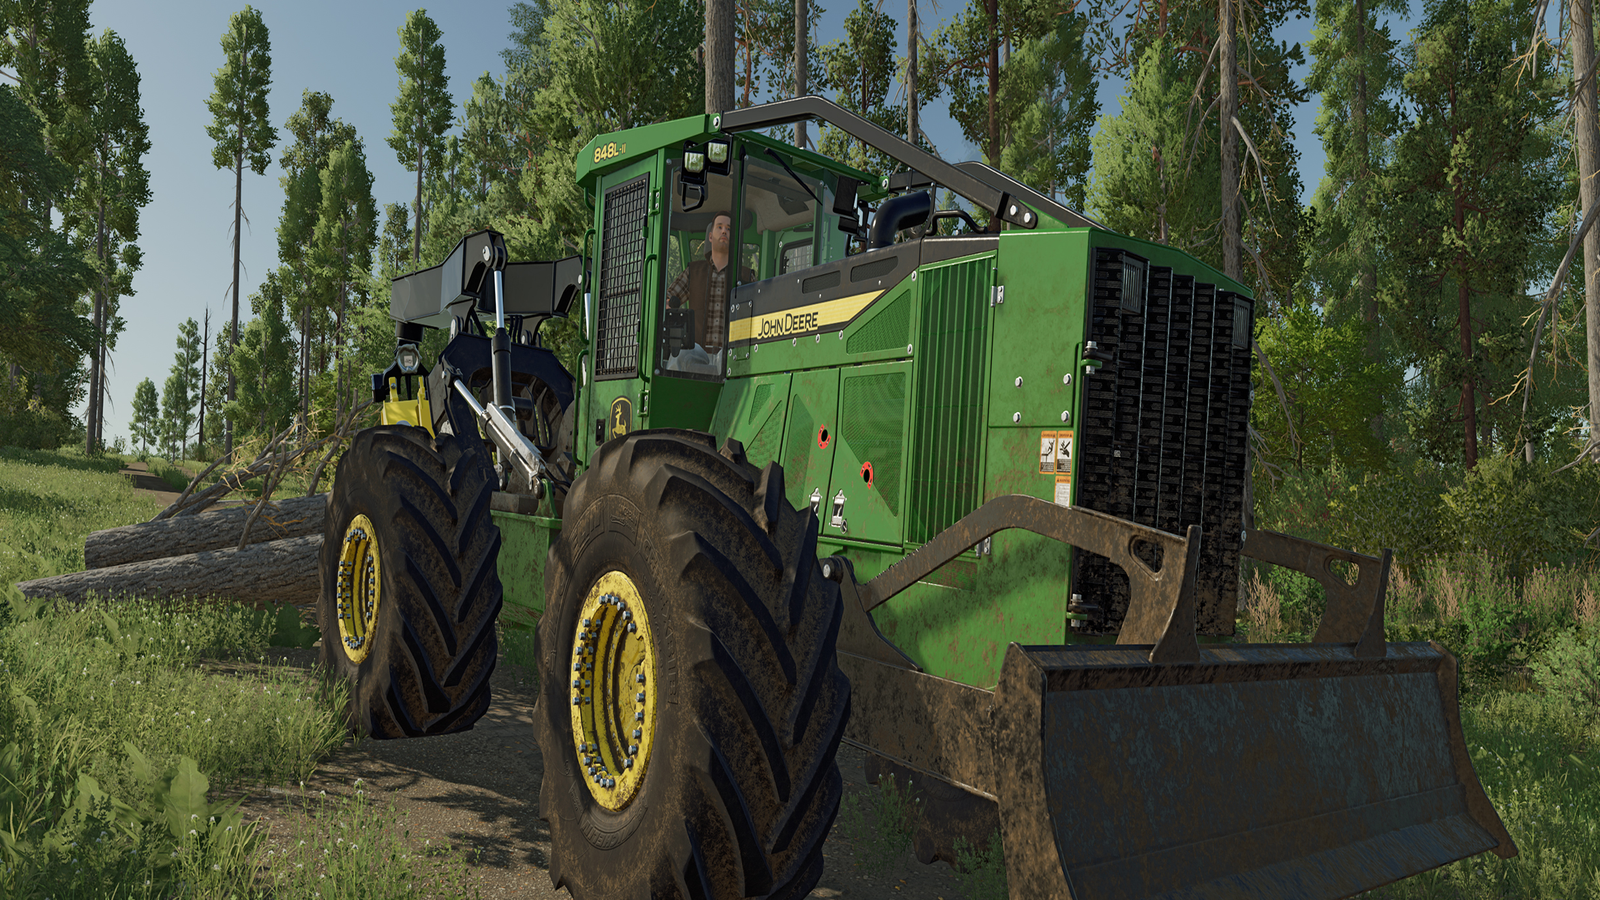 Landwirtschafts-Simulator 22: Platinum Edition online kaufen